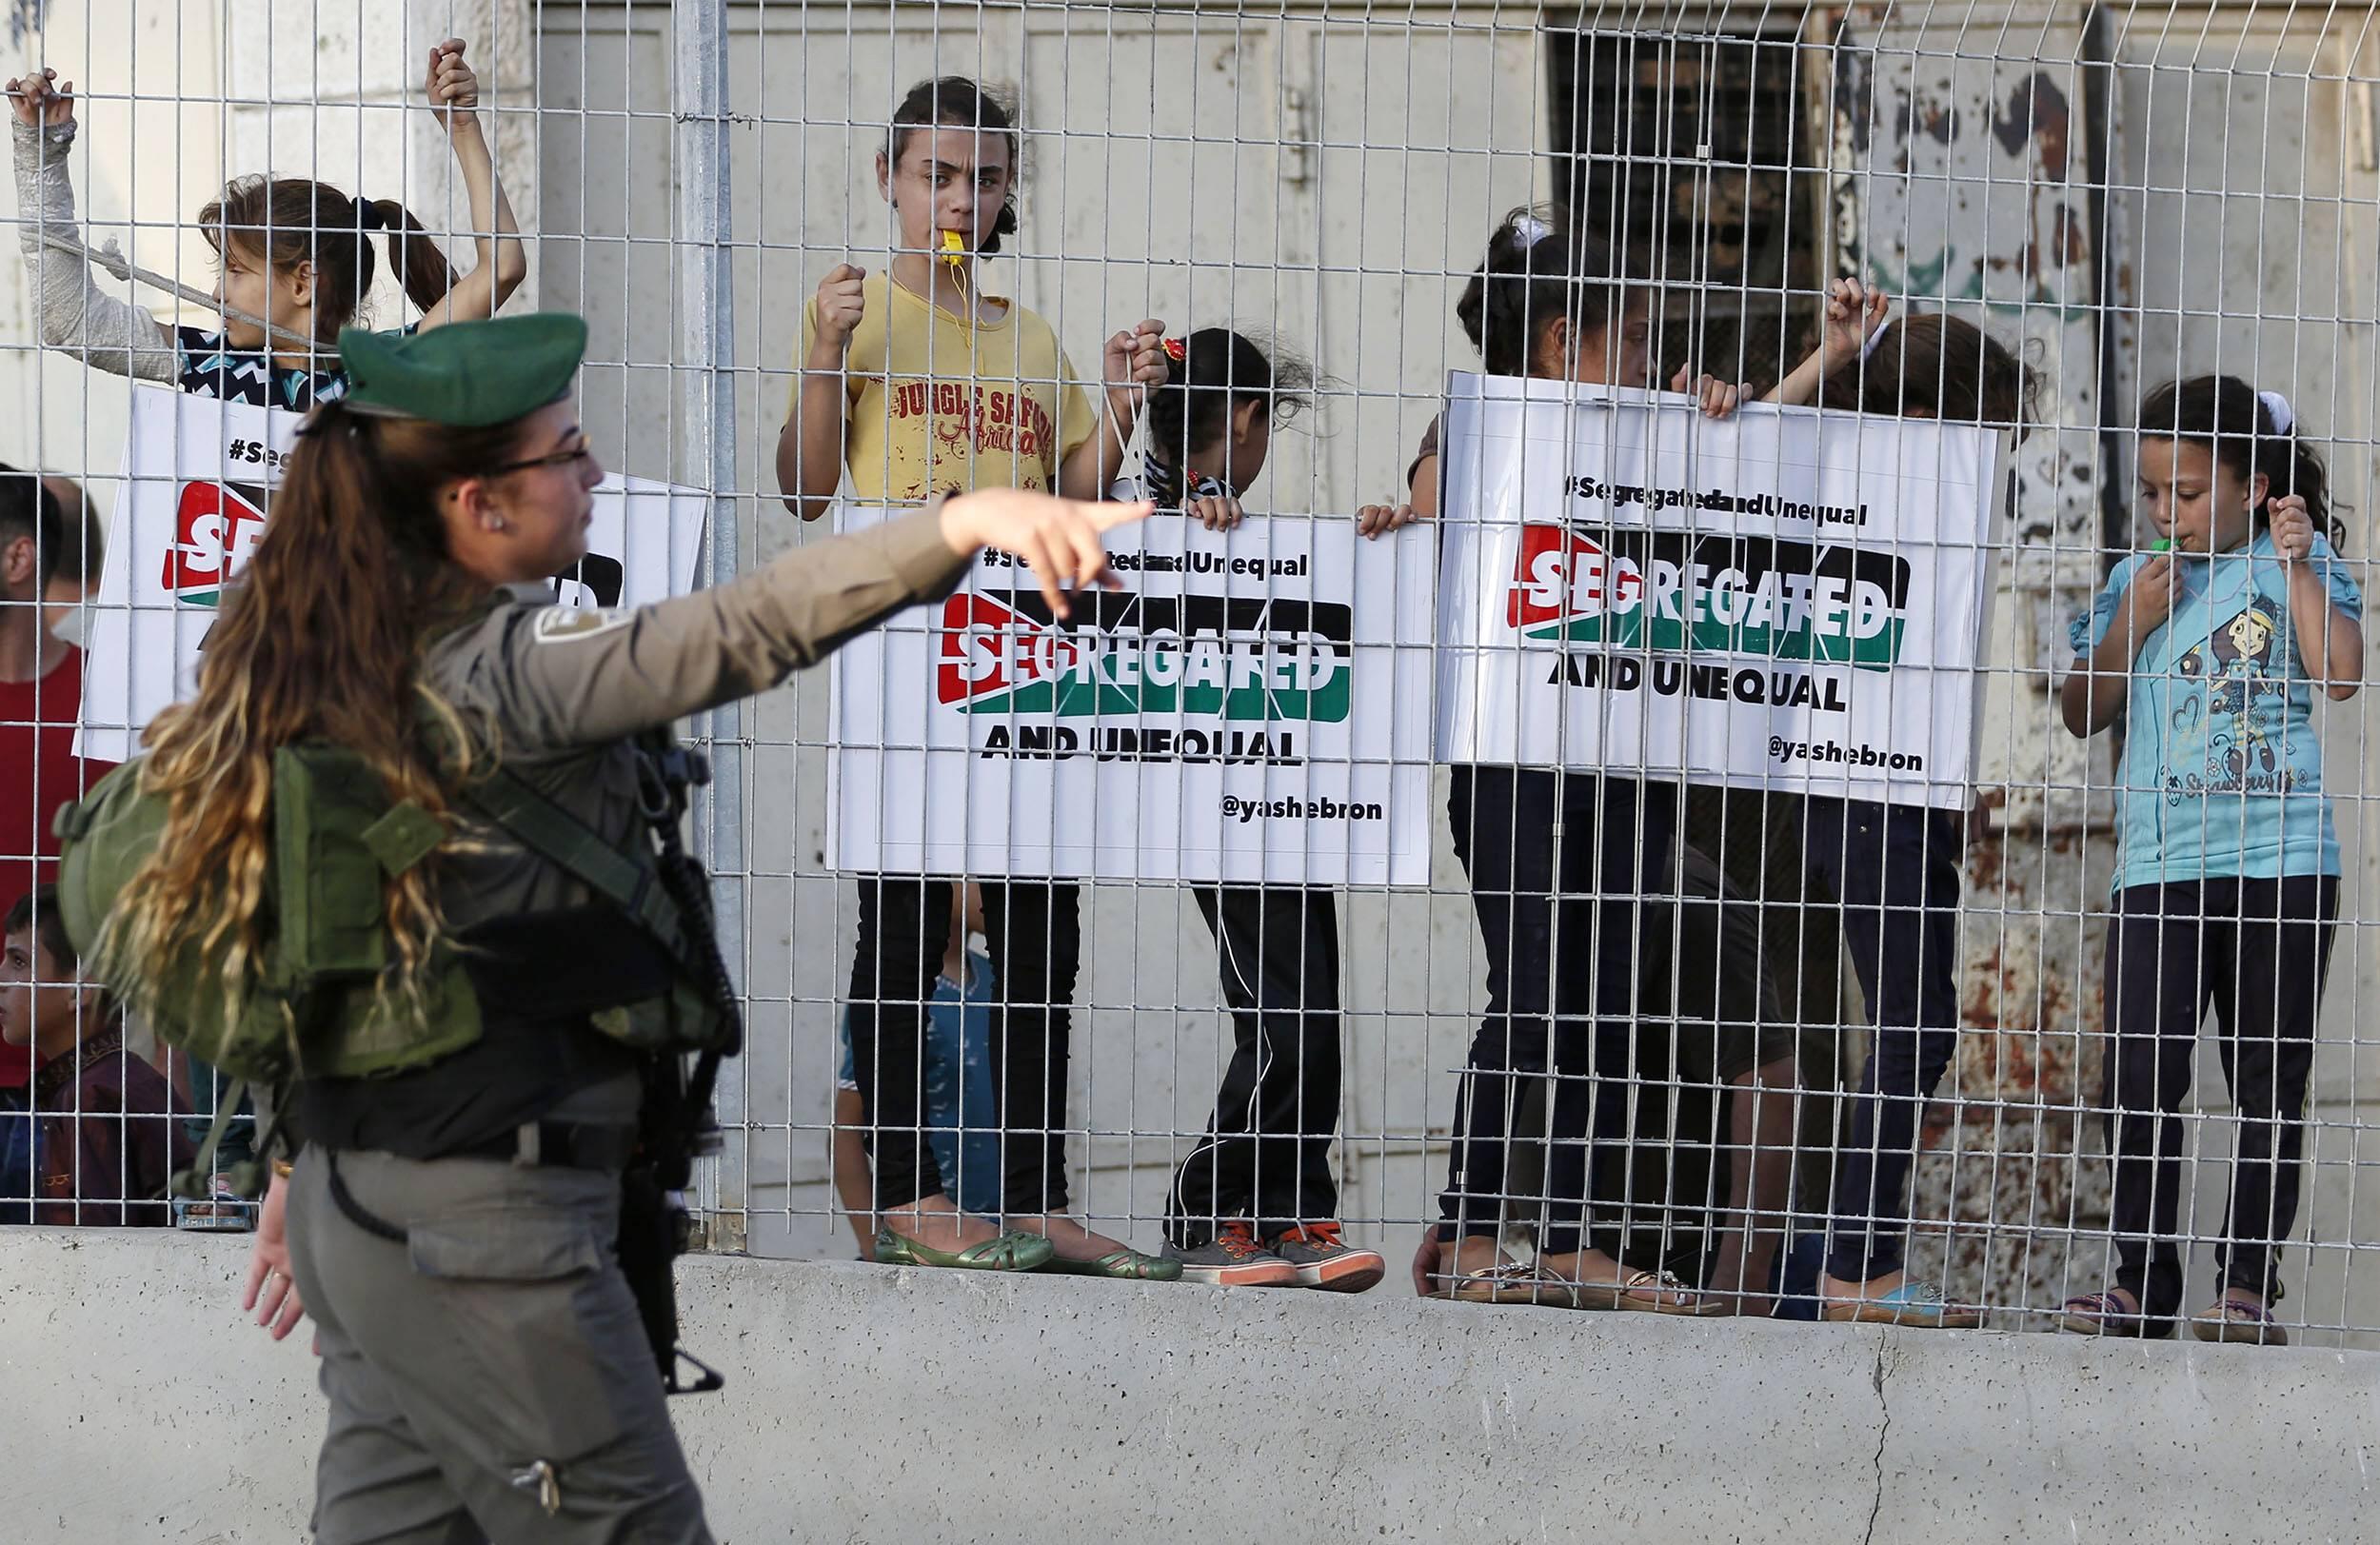 Palästinensische Kinder demonstrieren gegen Segregation und ungleiche Behandlung im Westjordanland, 18. September 2017.